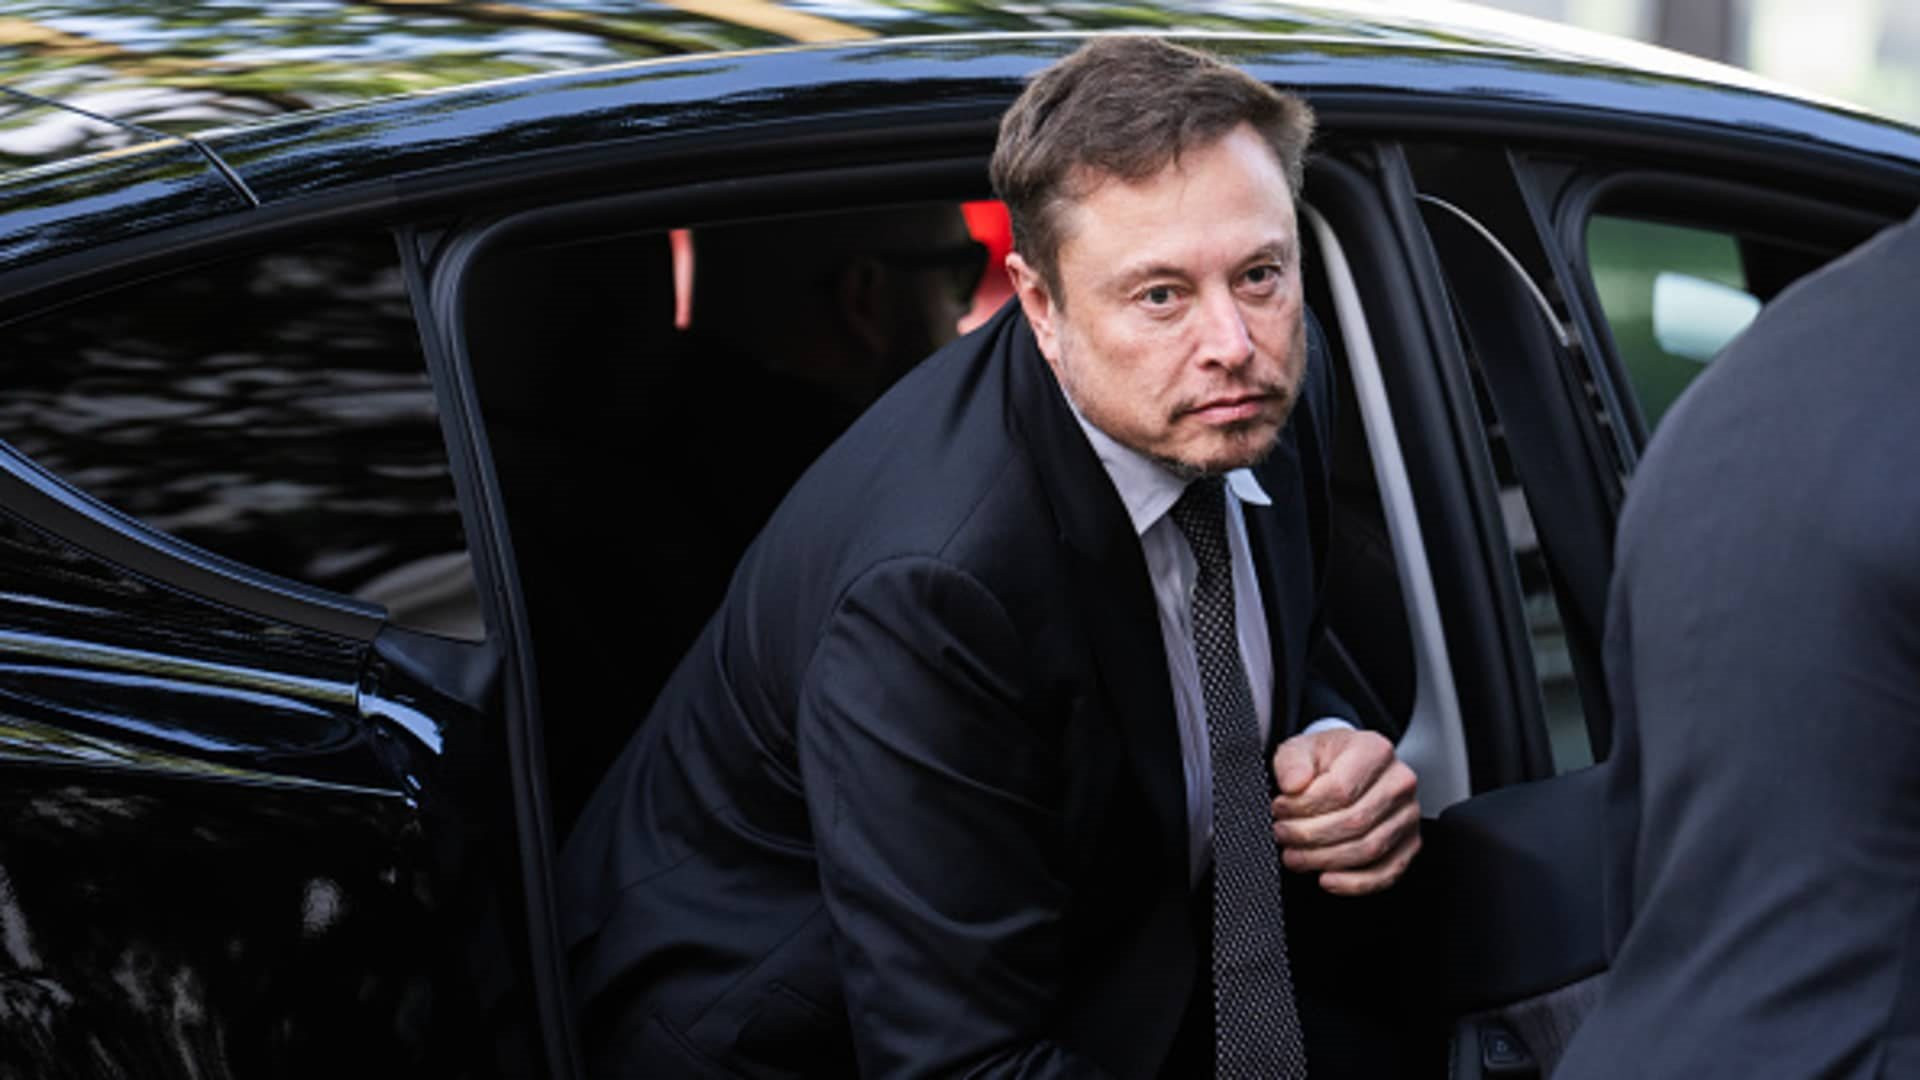 Elon Musk bị điều tra vì hành vi chống đối cơ quan thi hành công vụ: Ông chủ Twitter liên tục lấy cơ trốn thẩm vấn - Ảnh 3.